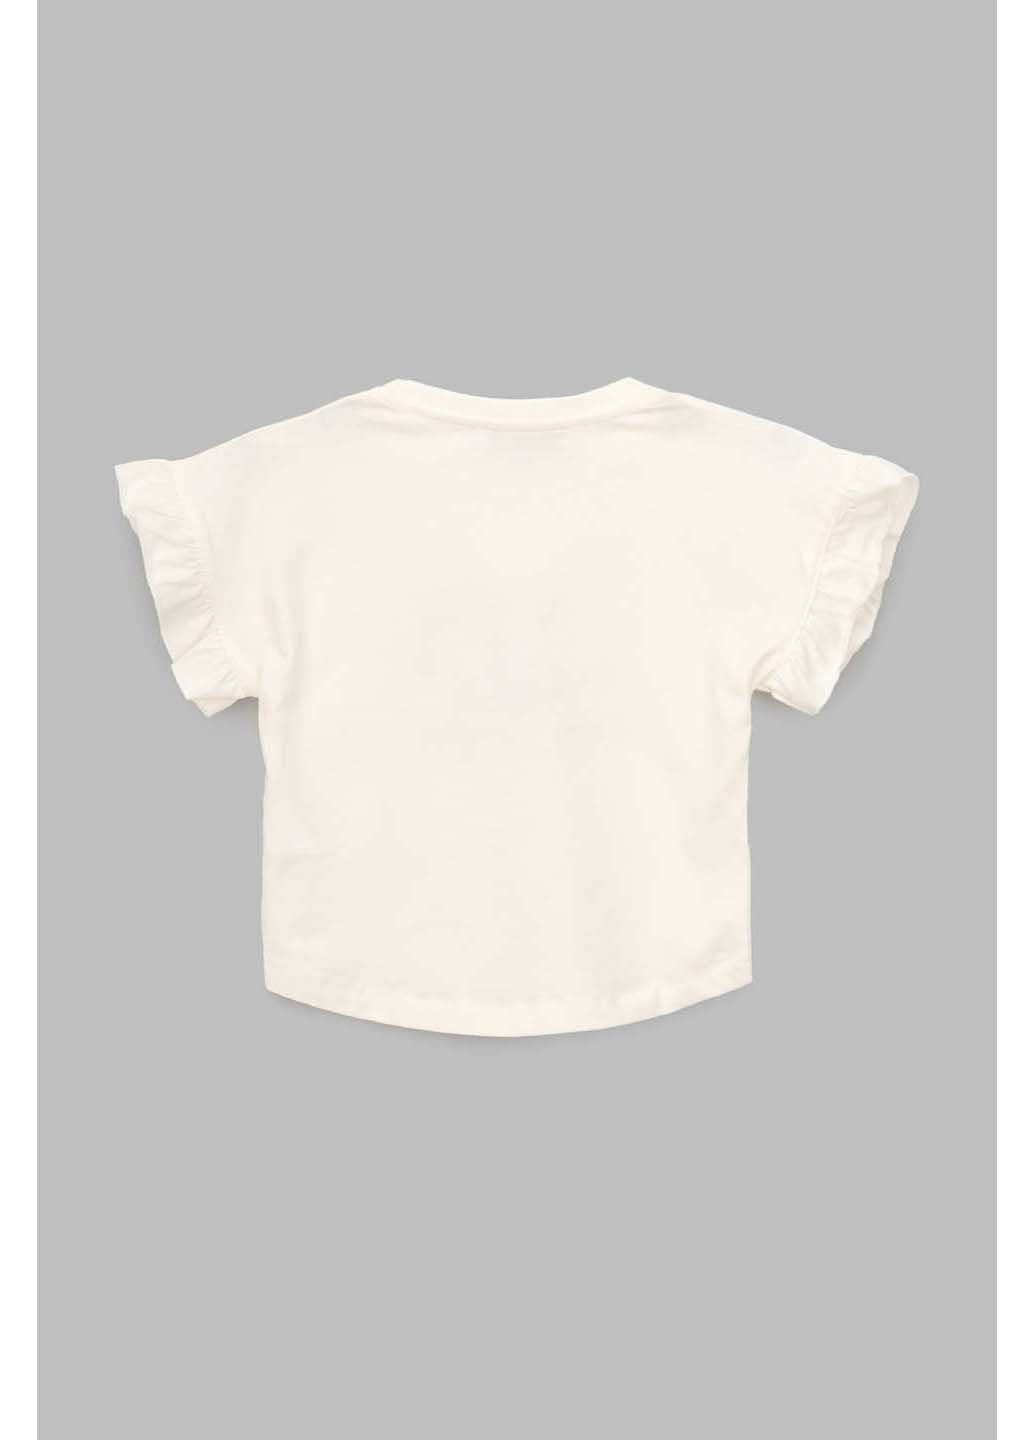 Молочная демисезонная футболка Viollen